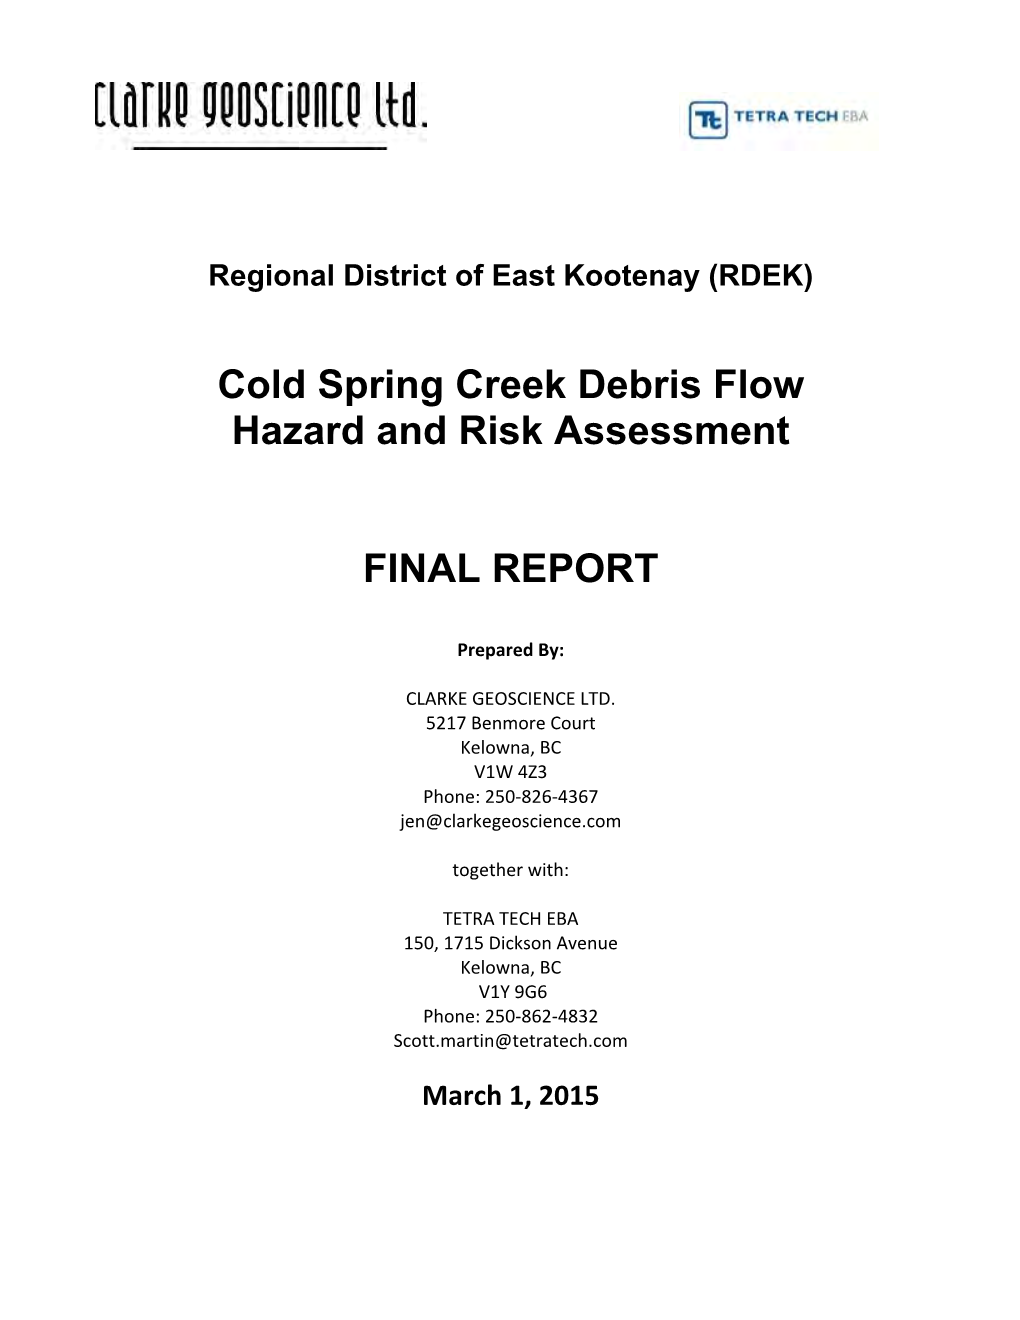 Cold Spring Creek Debris Flow Hazard and Risk Assessment